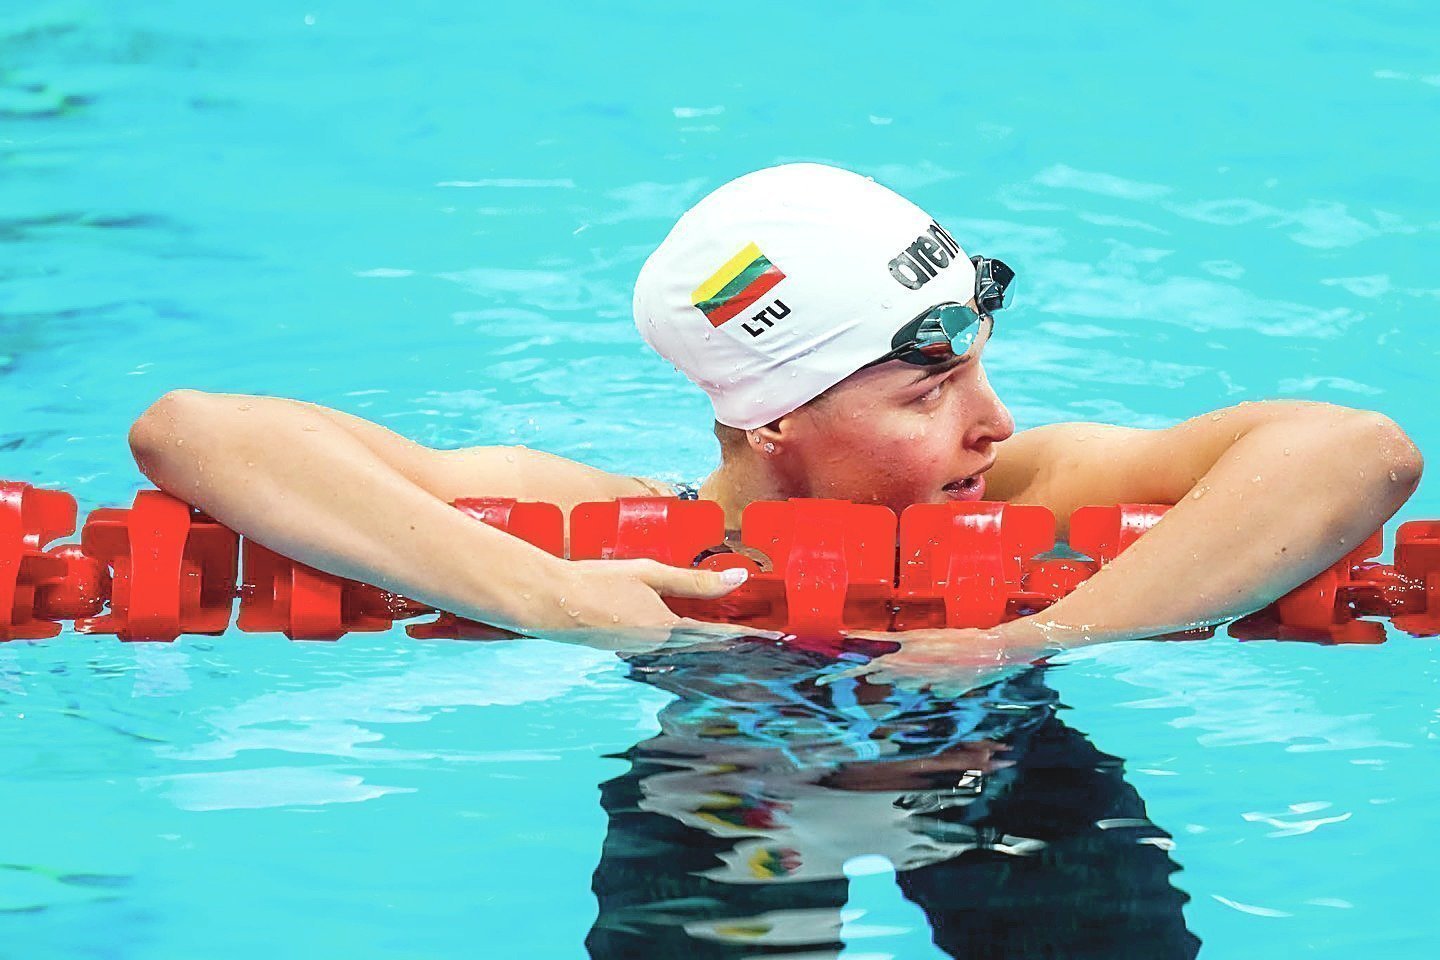 Jauniausia delegacijos narė K.Teterevkova plaukimo 100 m krūtine rungtyje pateko į pusfinalį.<br>V.Dranginio/LTOK nuotr.